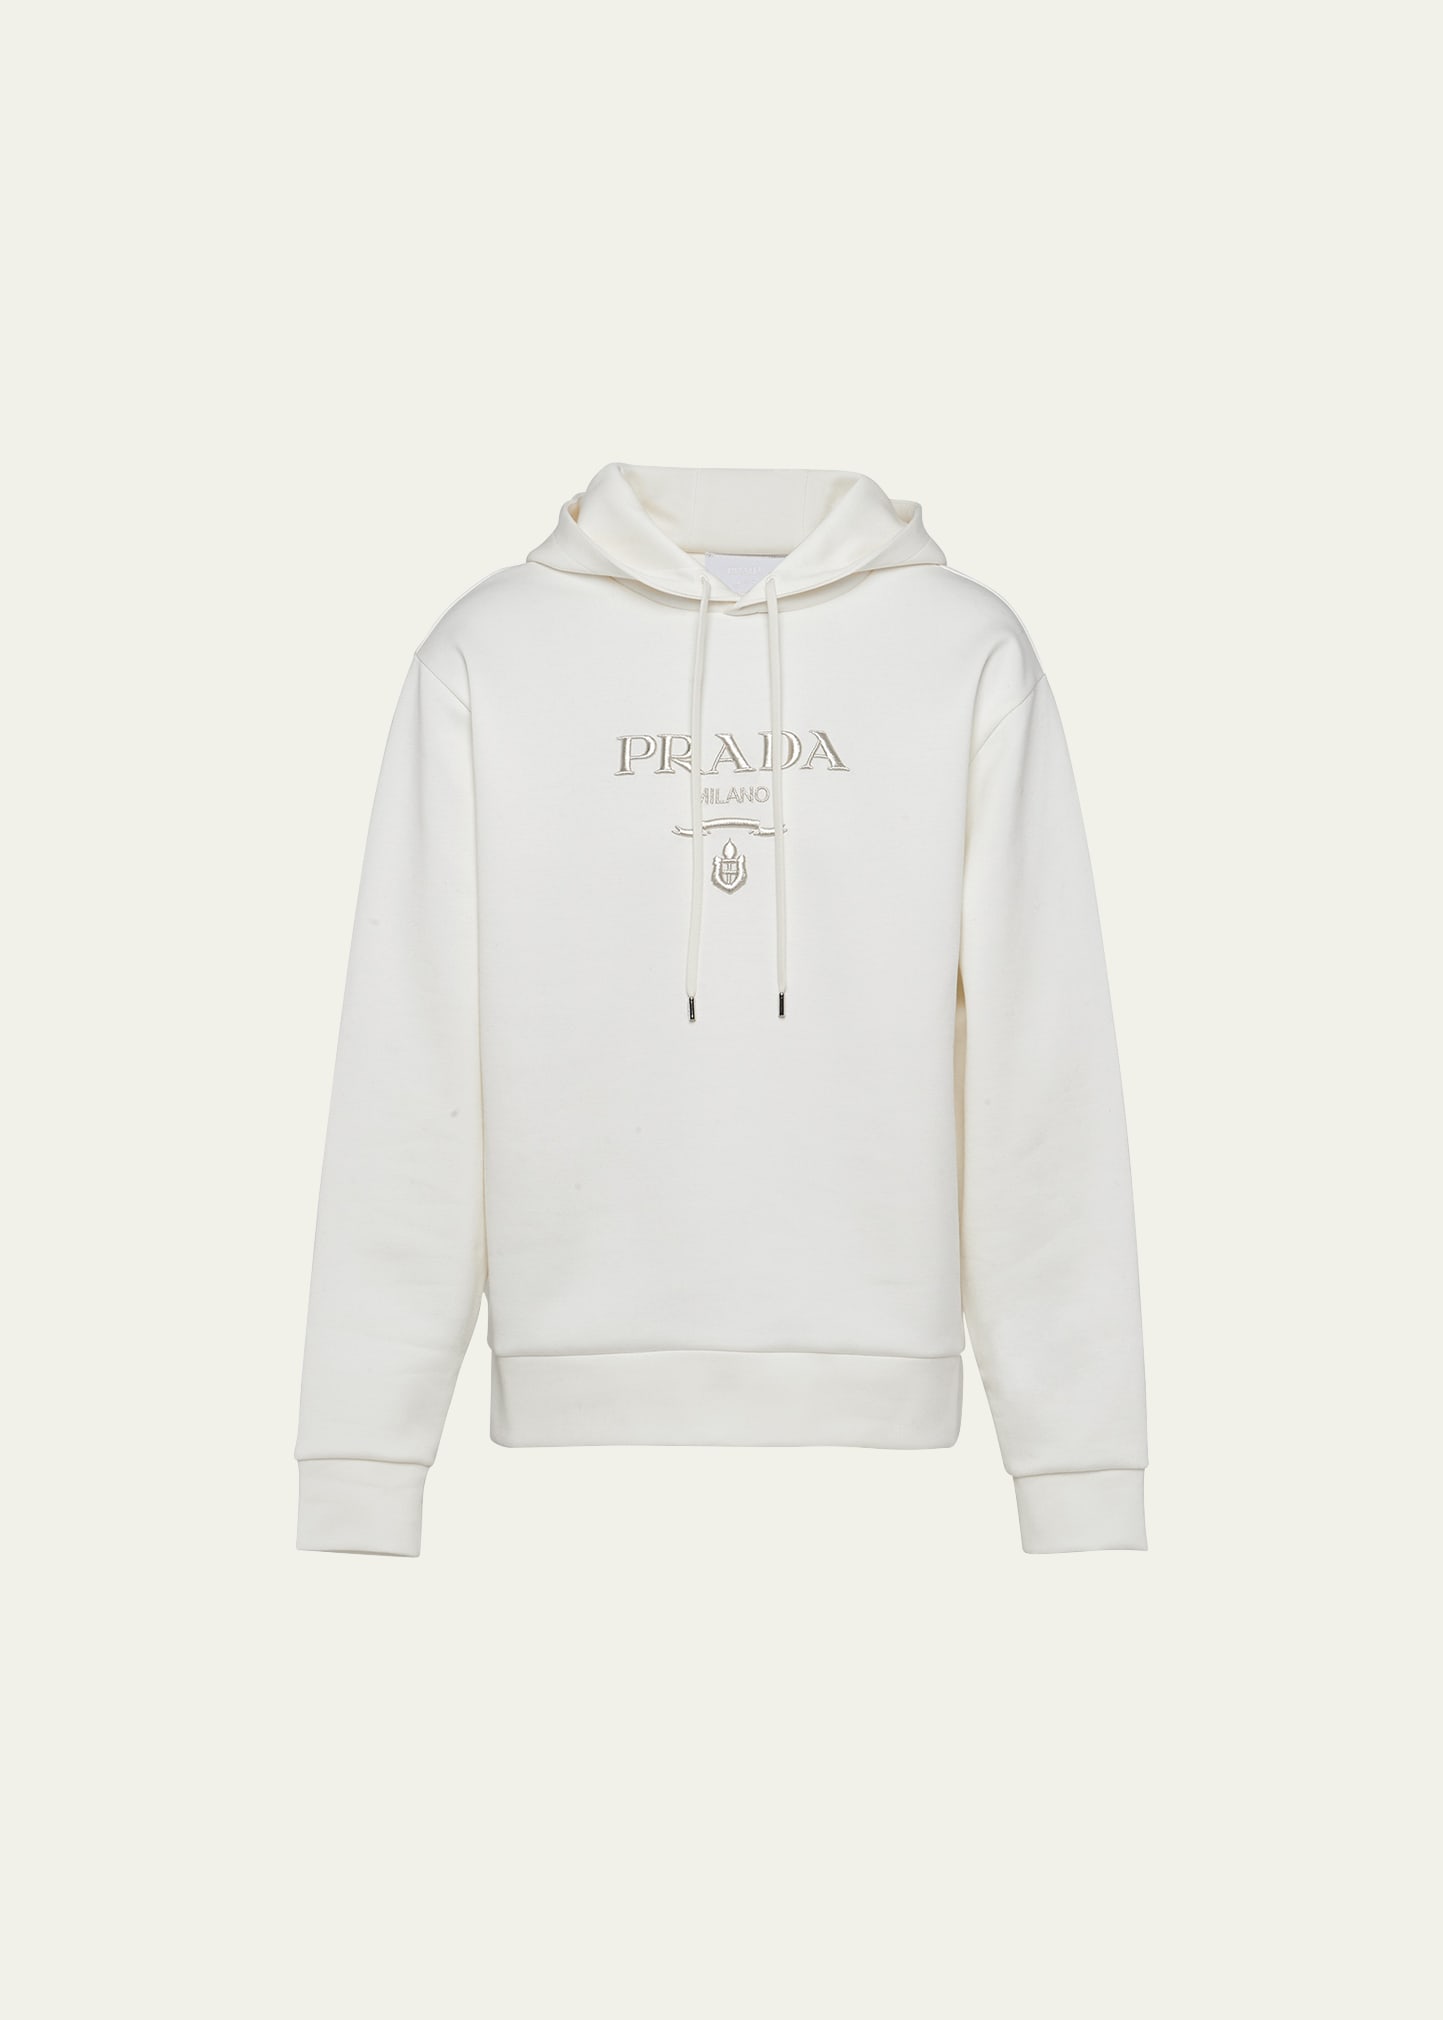 Prada Men's Tech Fleece Embroidered Sweatshirt In Bianco Argento